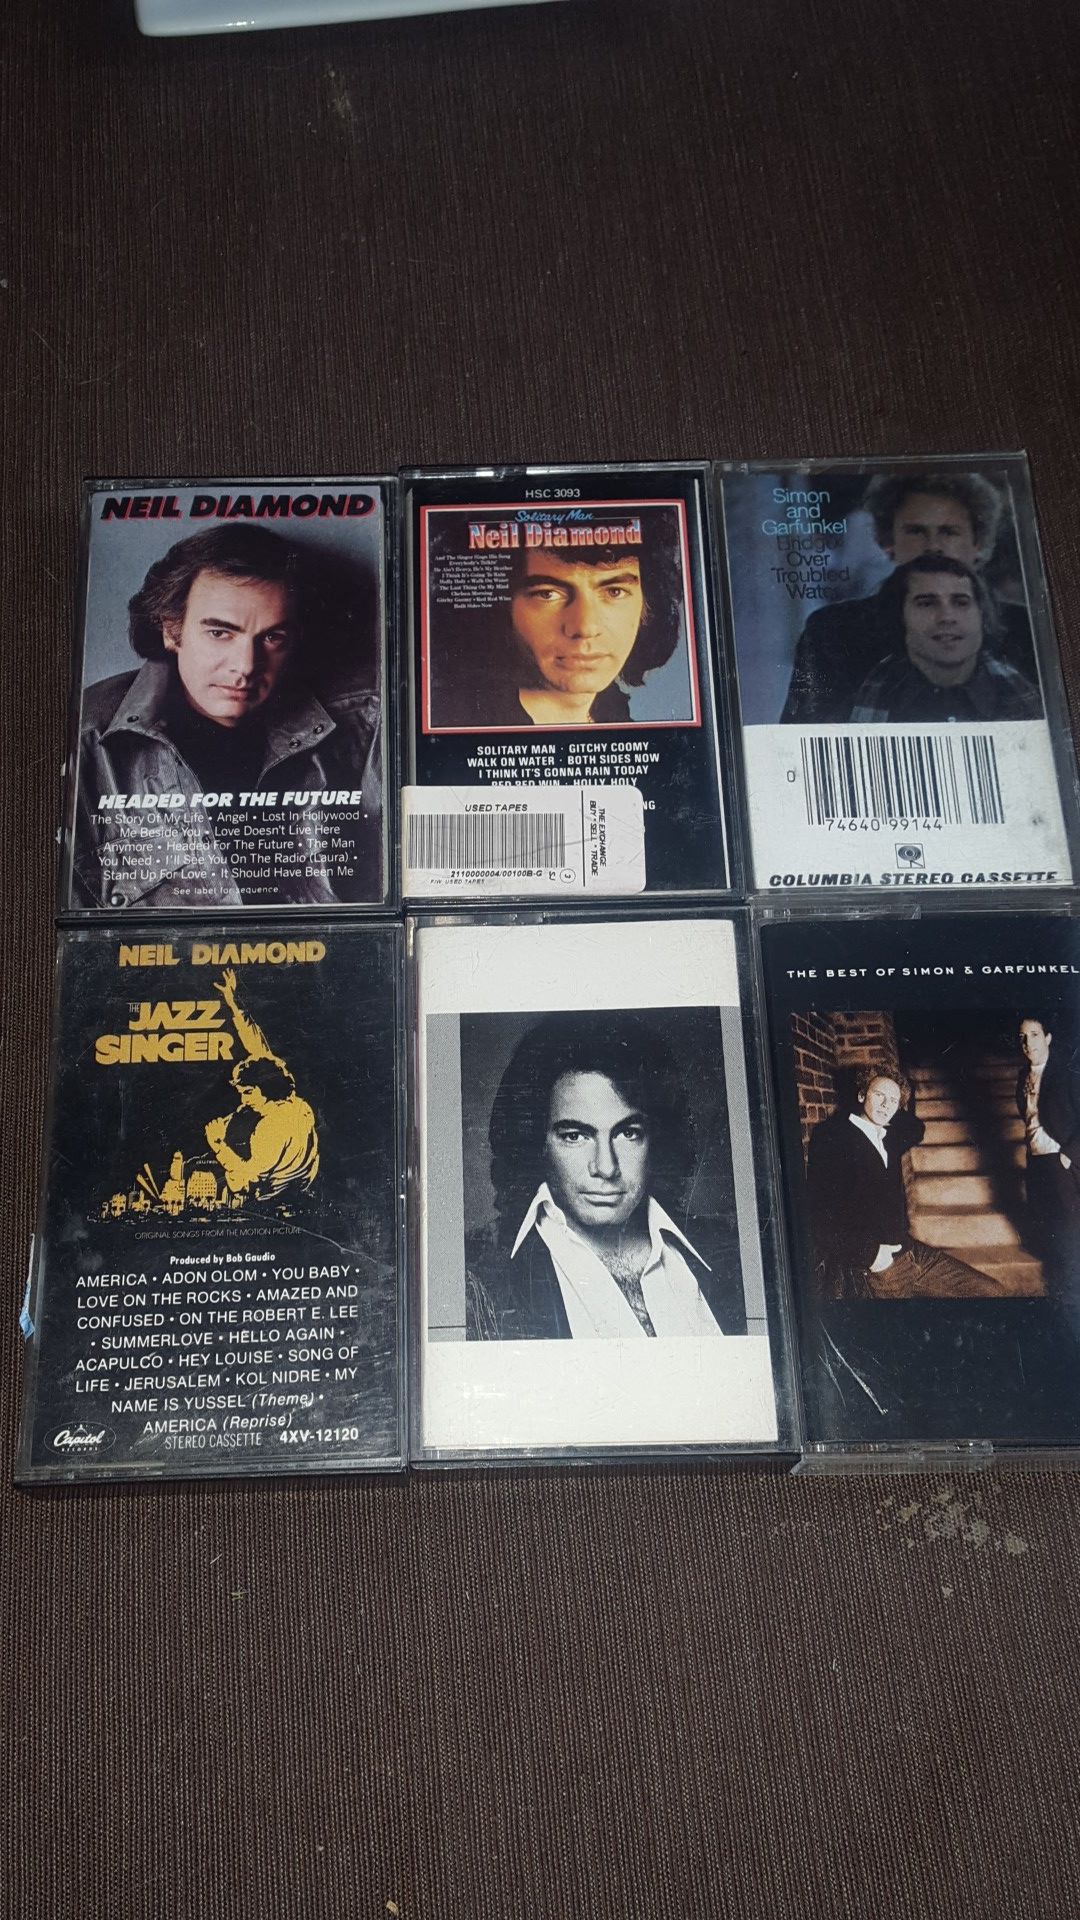 Neil Diamond Simon & Garfunkel cassette tapes